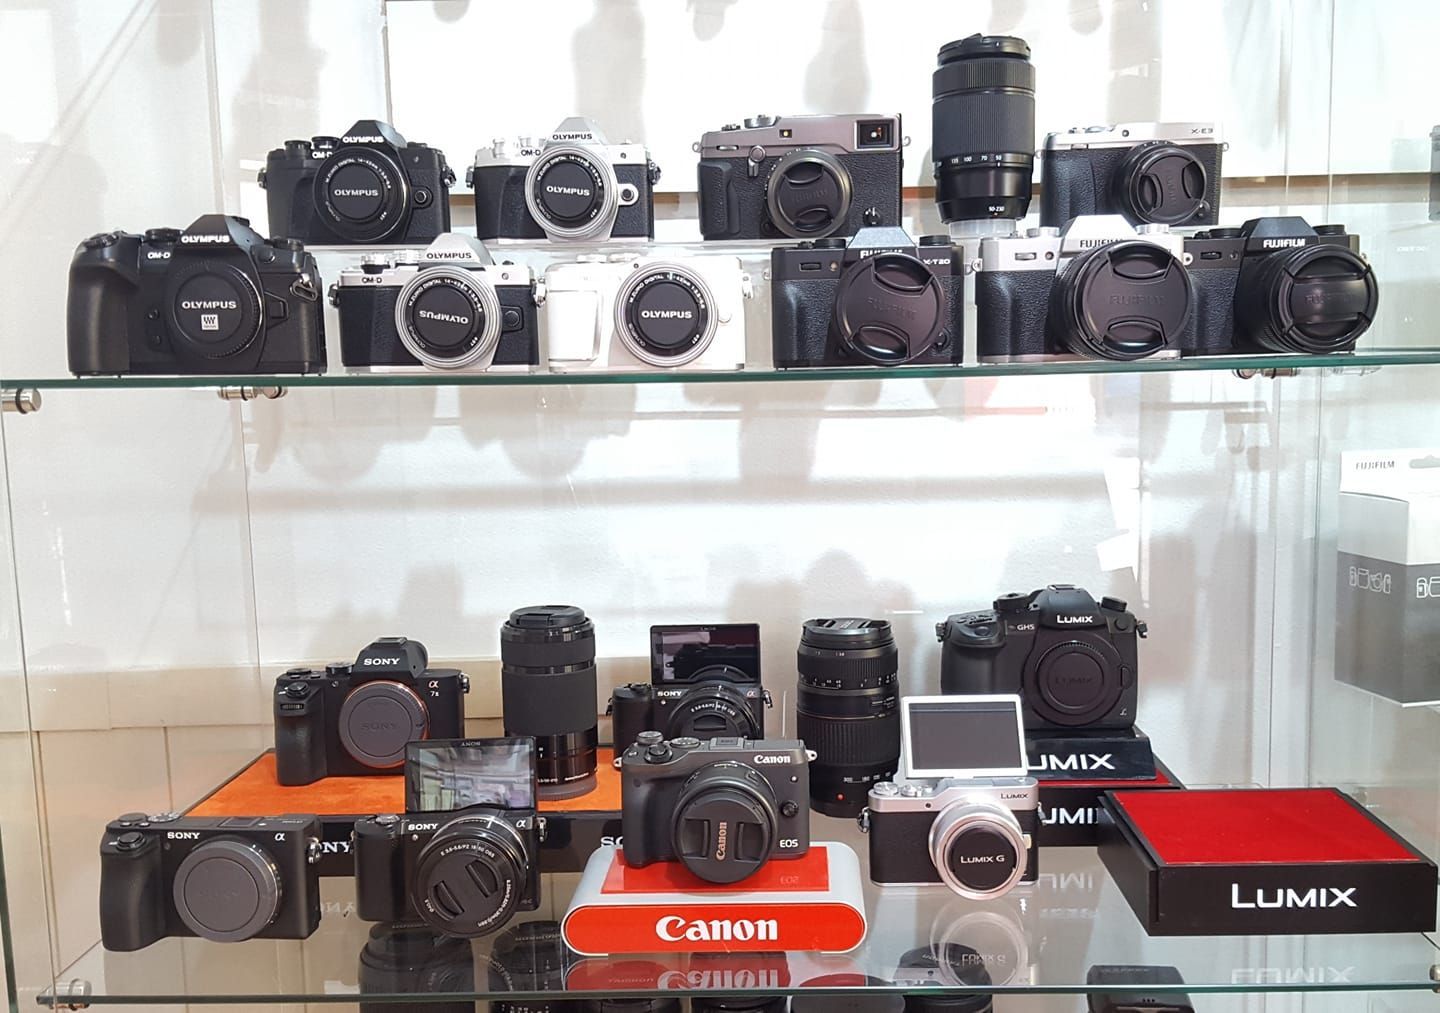 Camaras Fotograficas - Fotobuy store